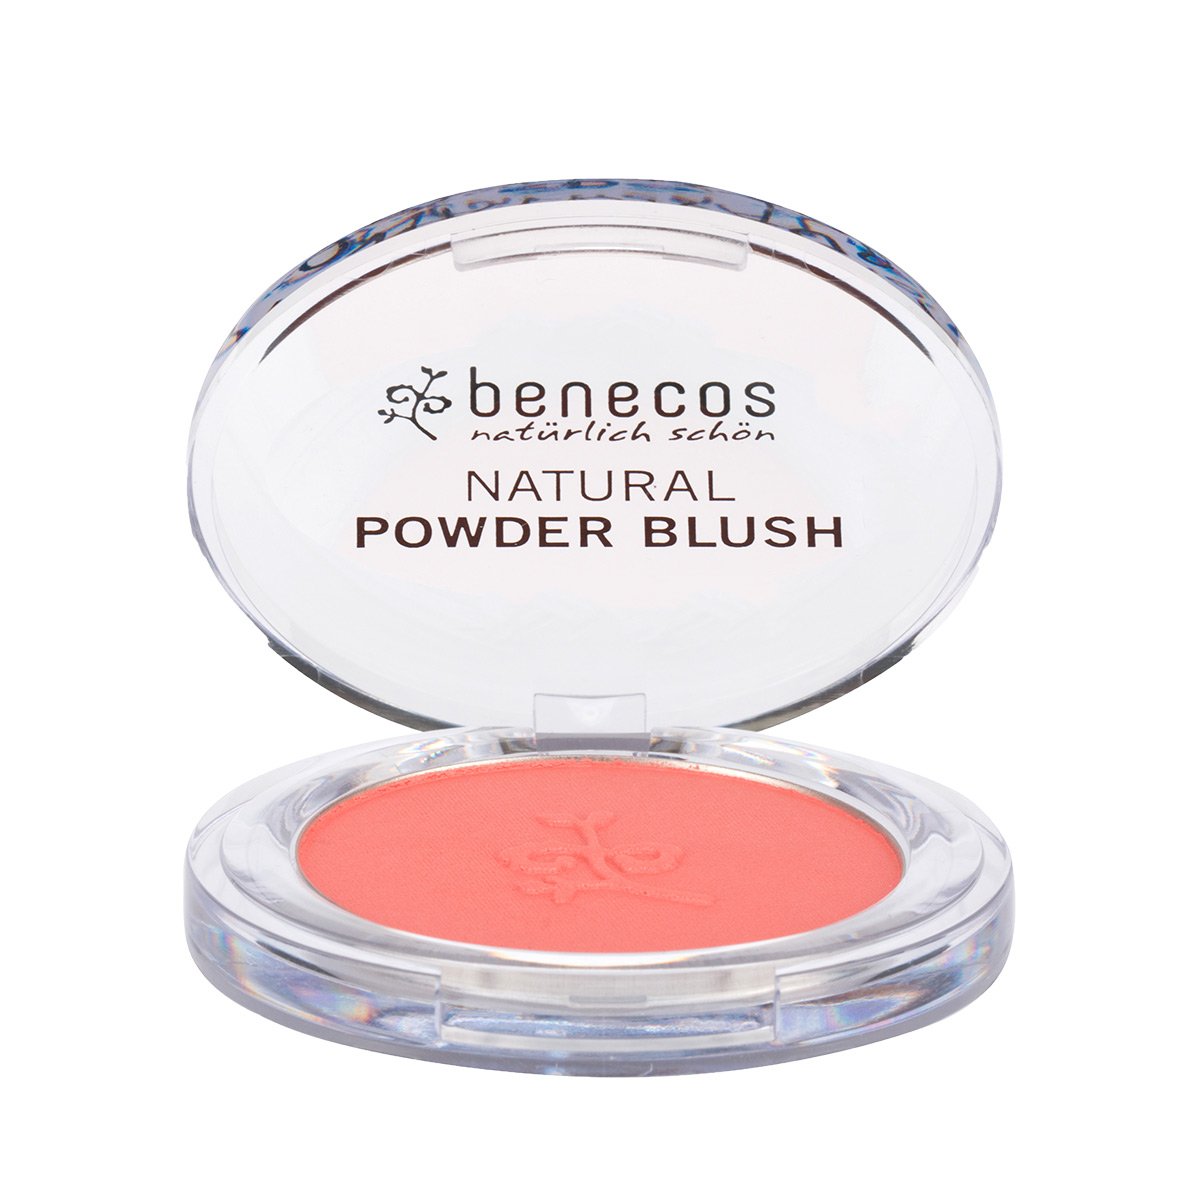 Benecos Natural Powder Blush - Sassy Salmon 5.5g